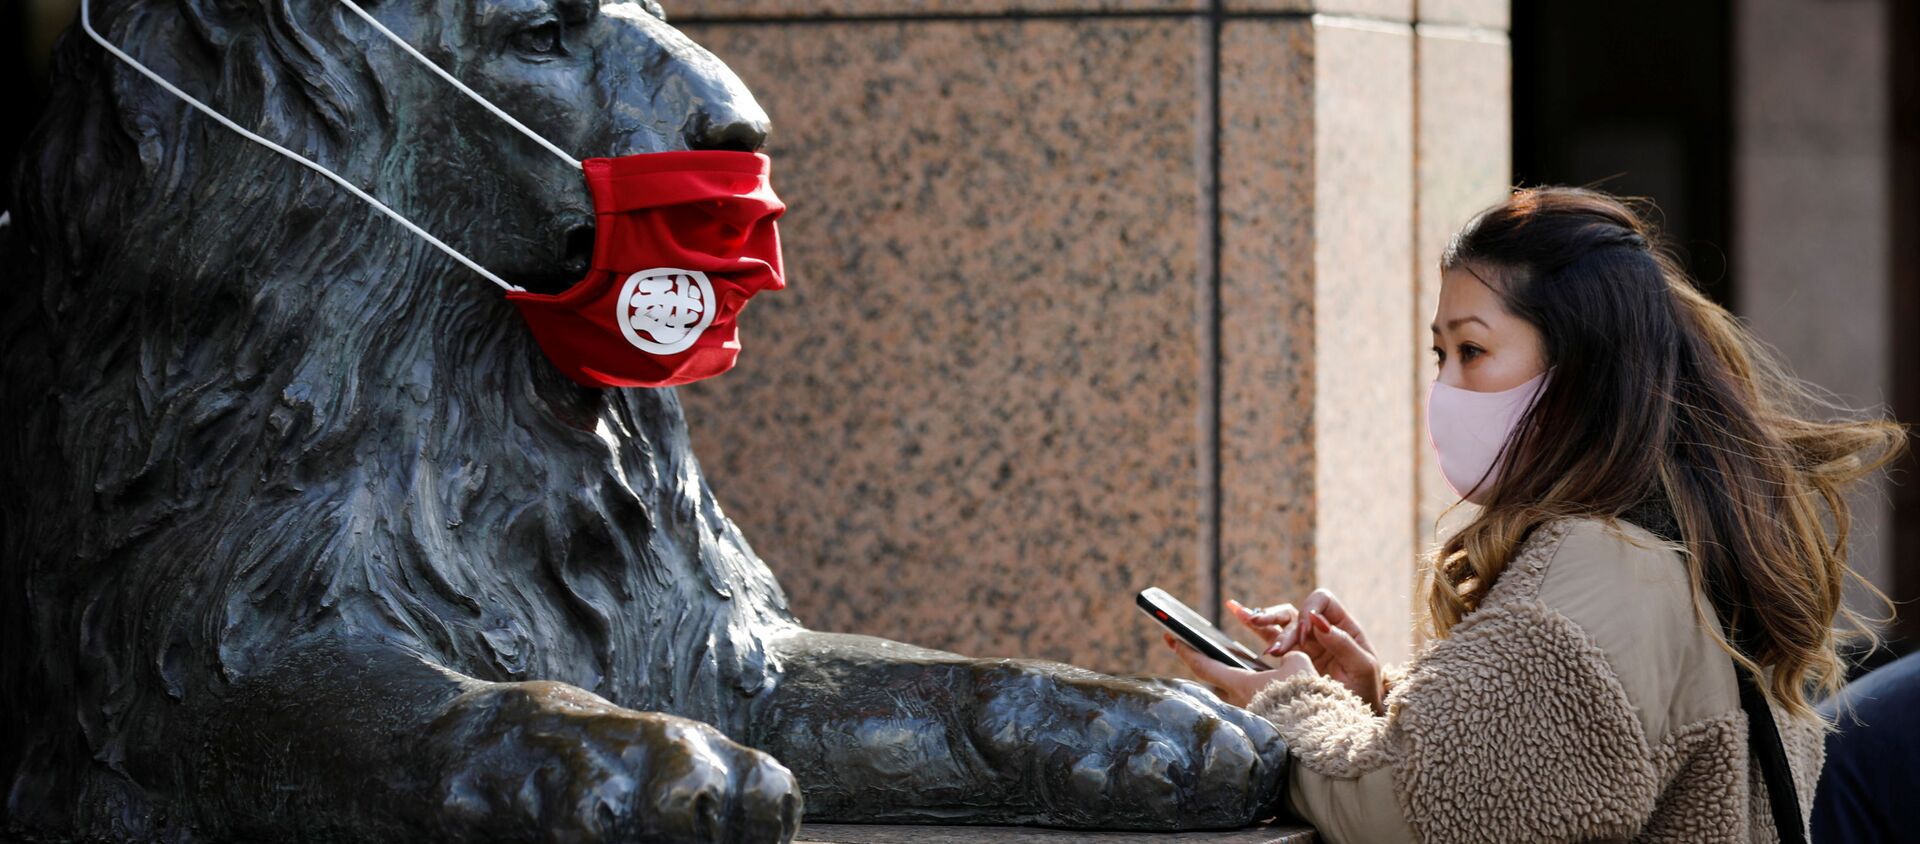 Женщина в защитной маске перед статуей в Токио  - Sputnik Ўзбекистон, 1920, 27.12.2020